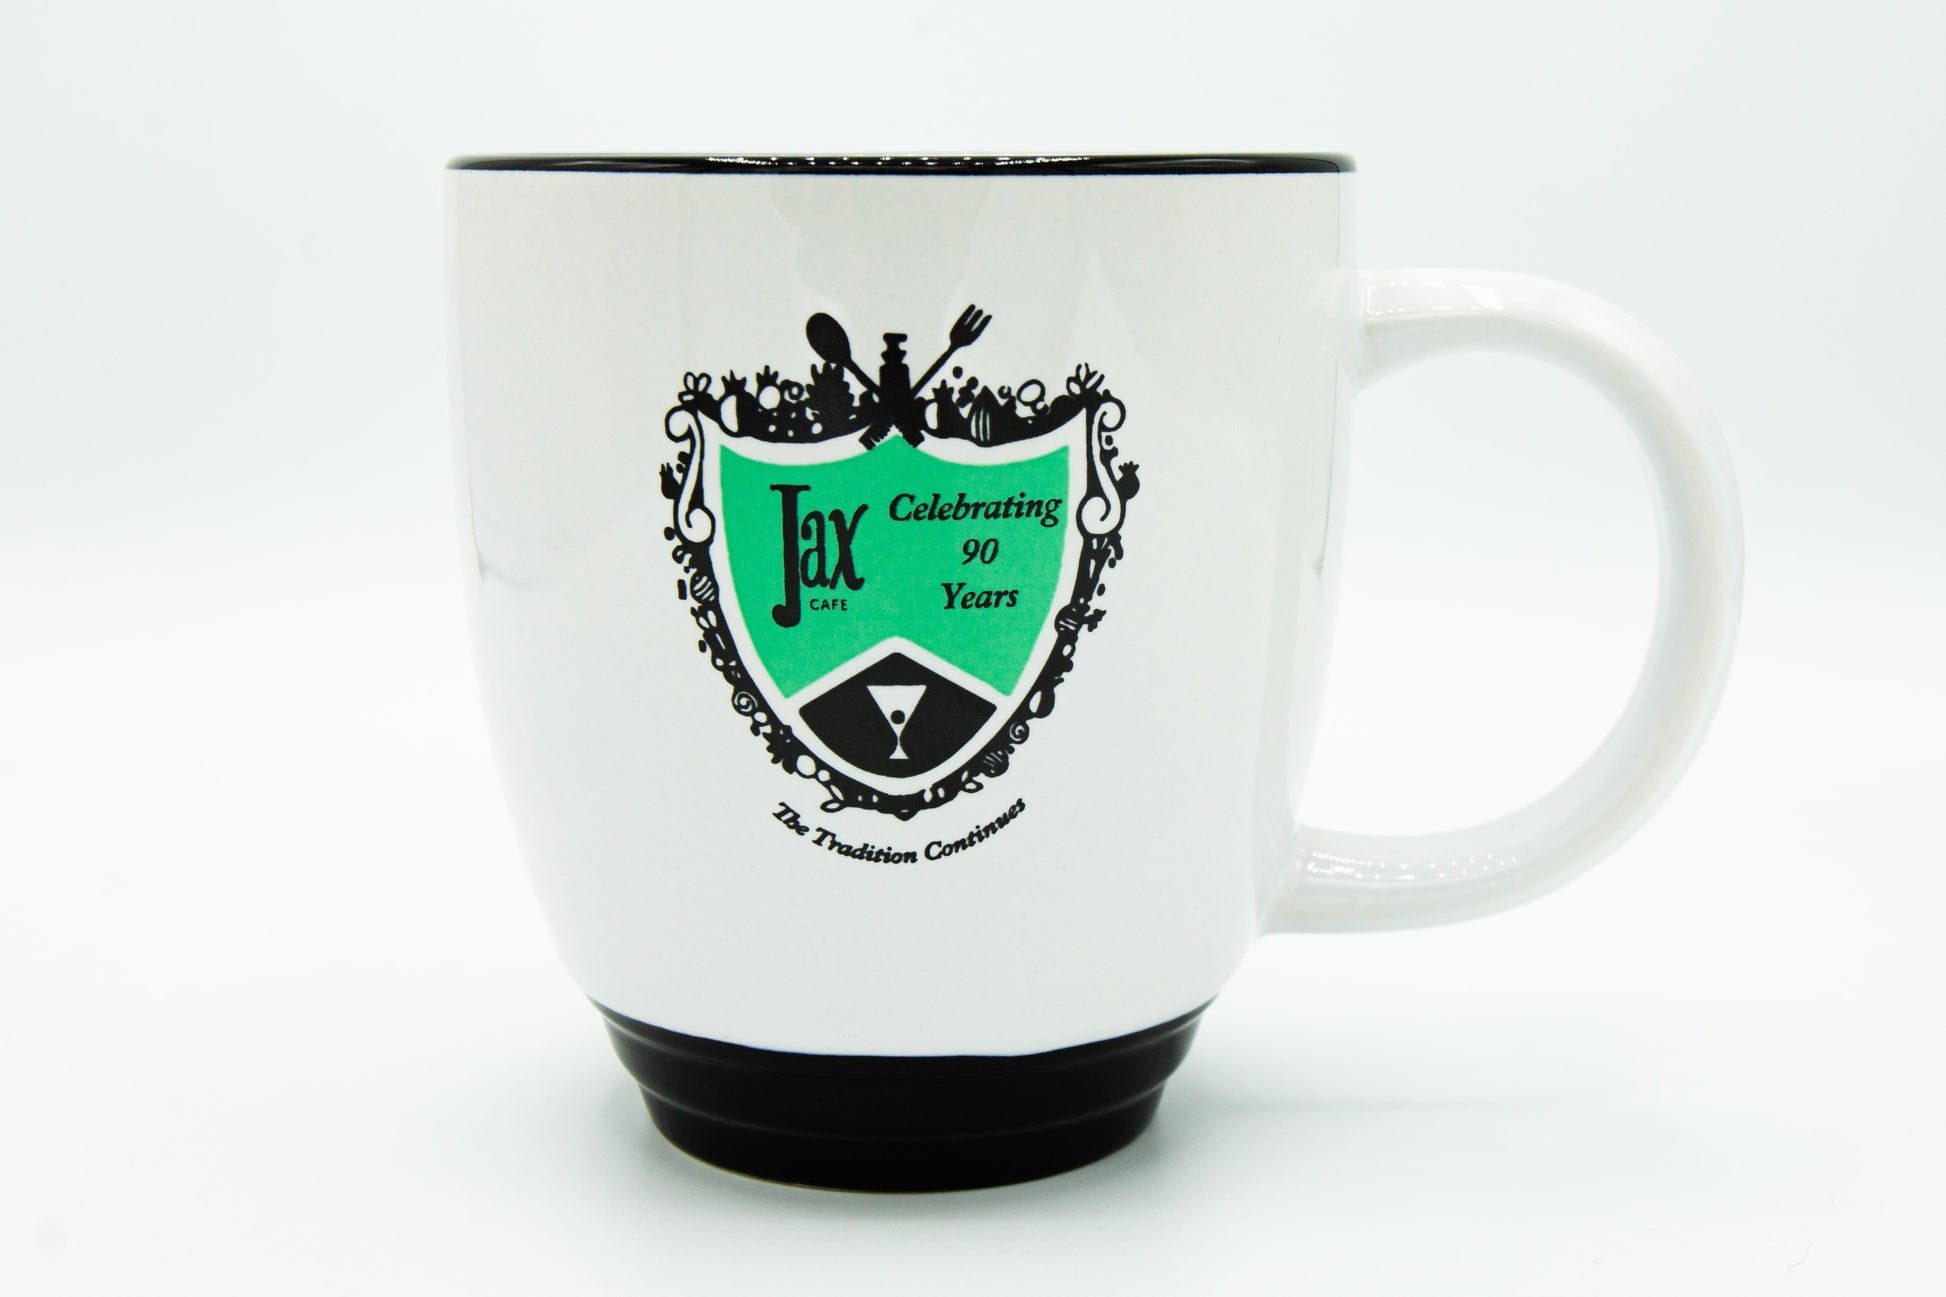 Jax Cafe Celebrating 90 Years mug 